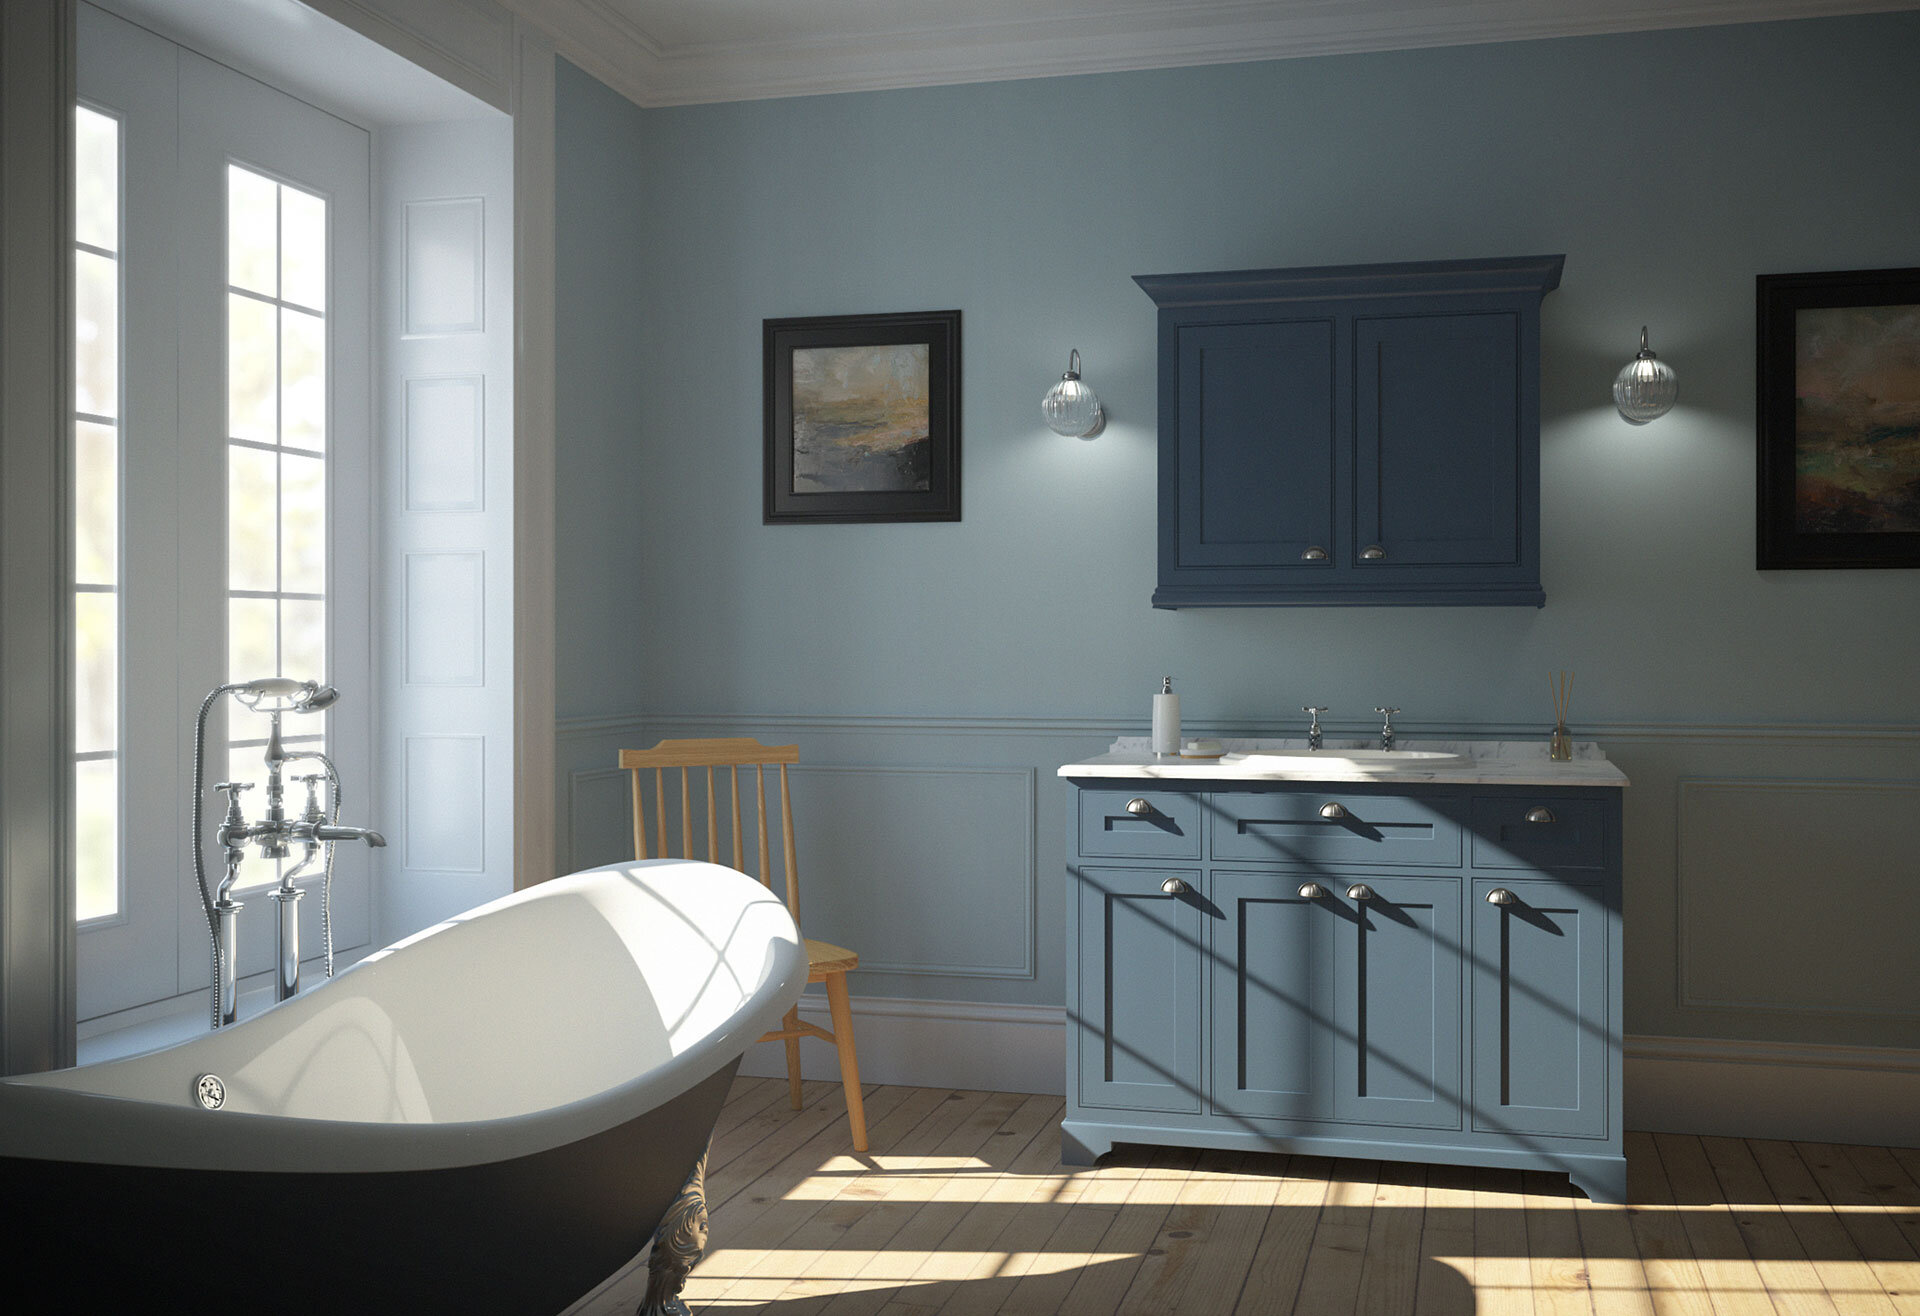 WK360-CGI-Bathroom-period-style-bathroom-in-duck-egg-blue.jpg